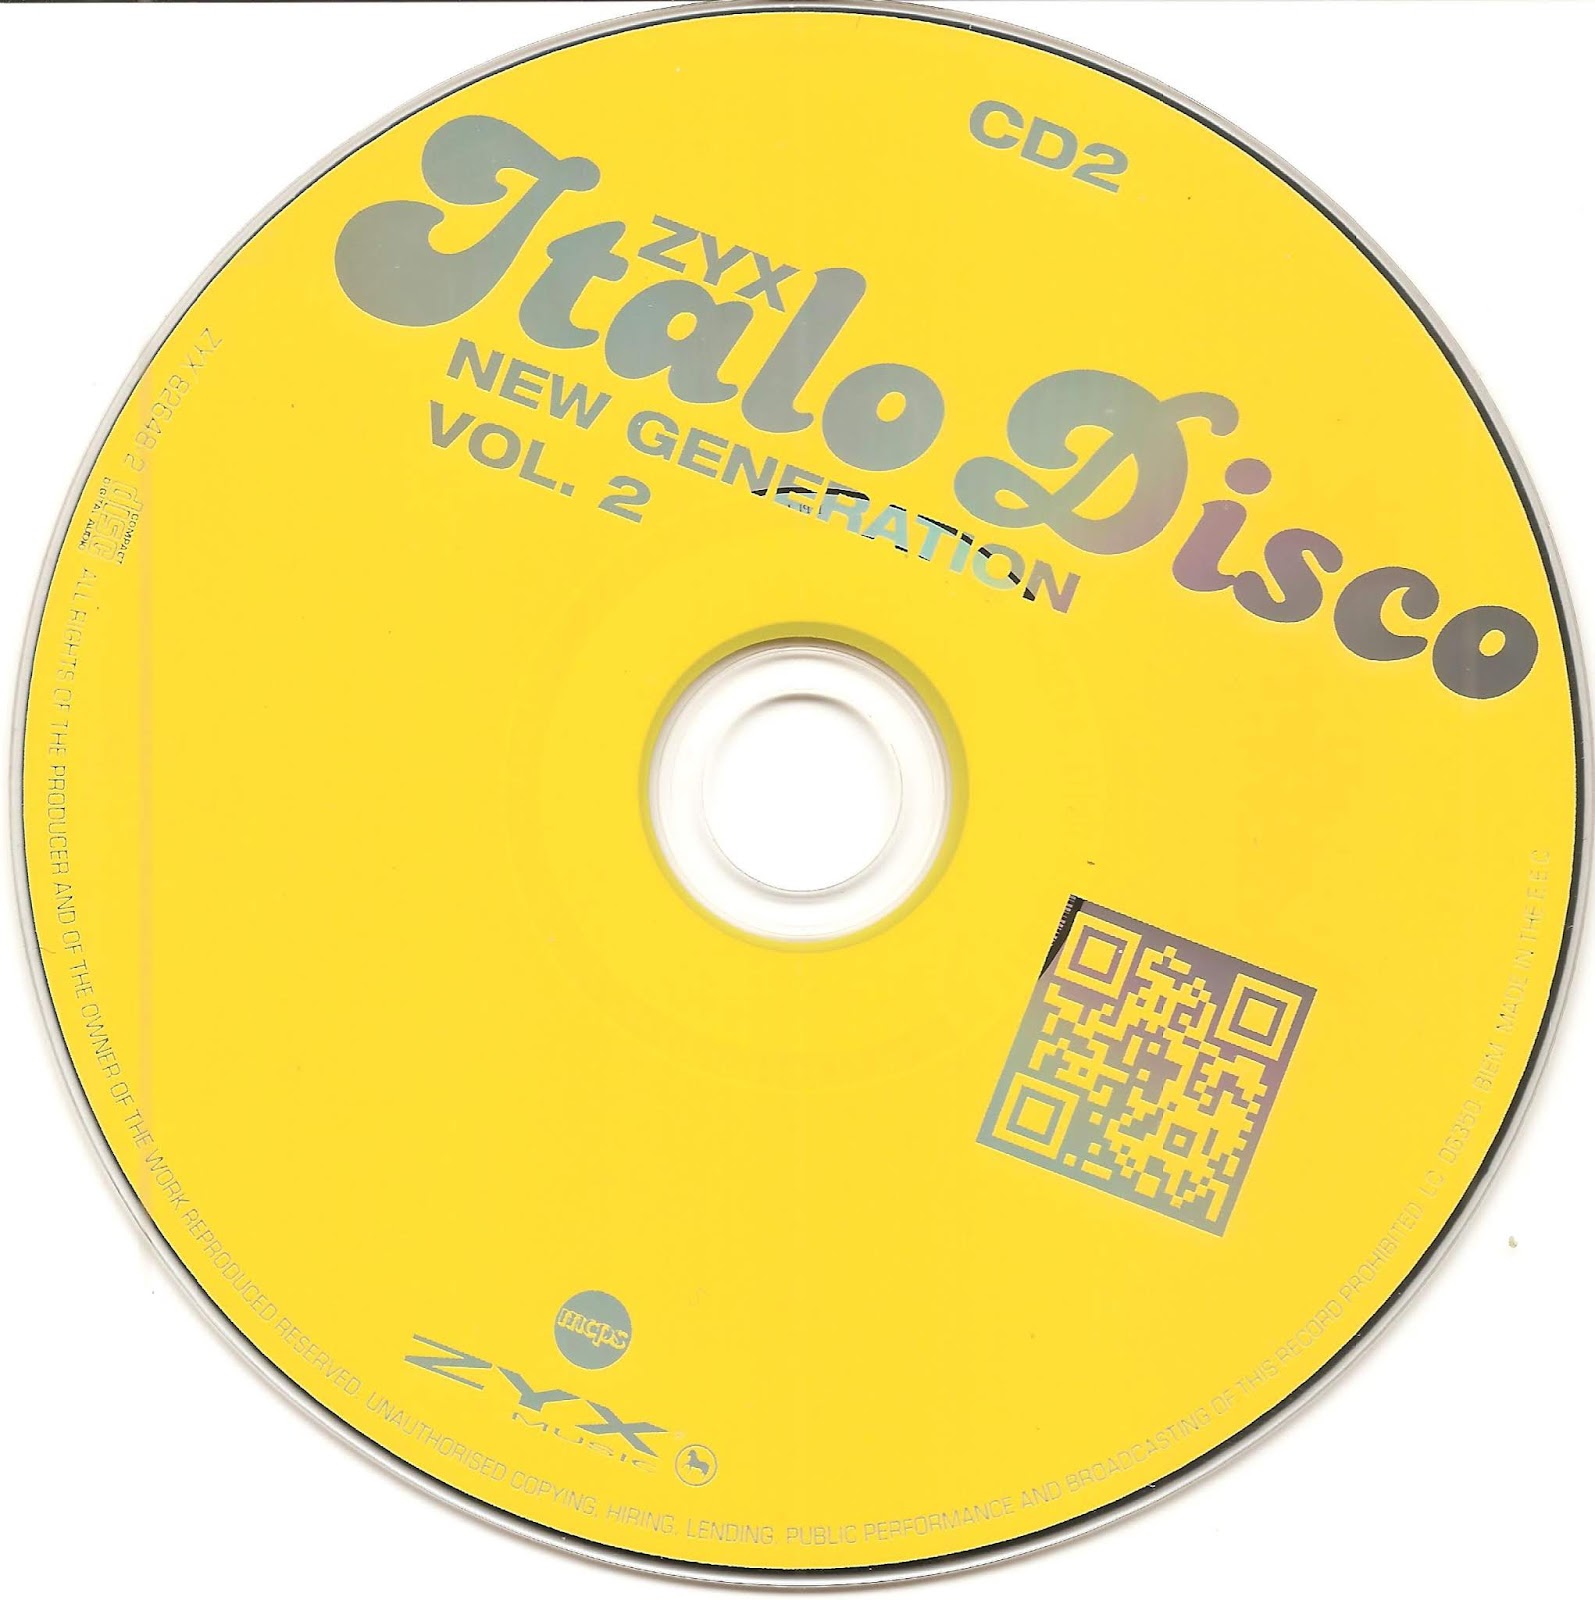 Zyx italo disco new generation vol 24. Italo Disco New Generation. 2023 - ZYX Italo Disco New Generation Vol.22 (2cd). ZYX Italo Disco New. Italo Disco New Generation Vol.